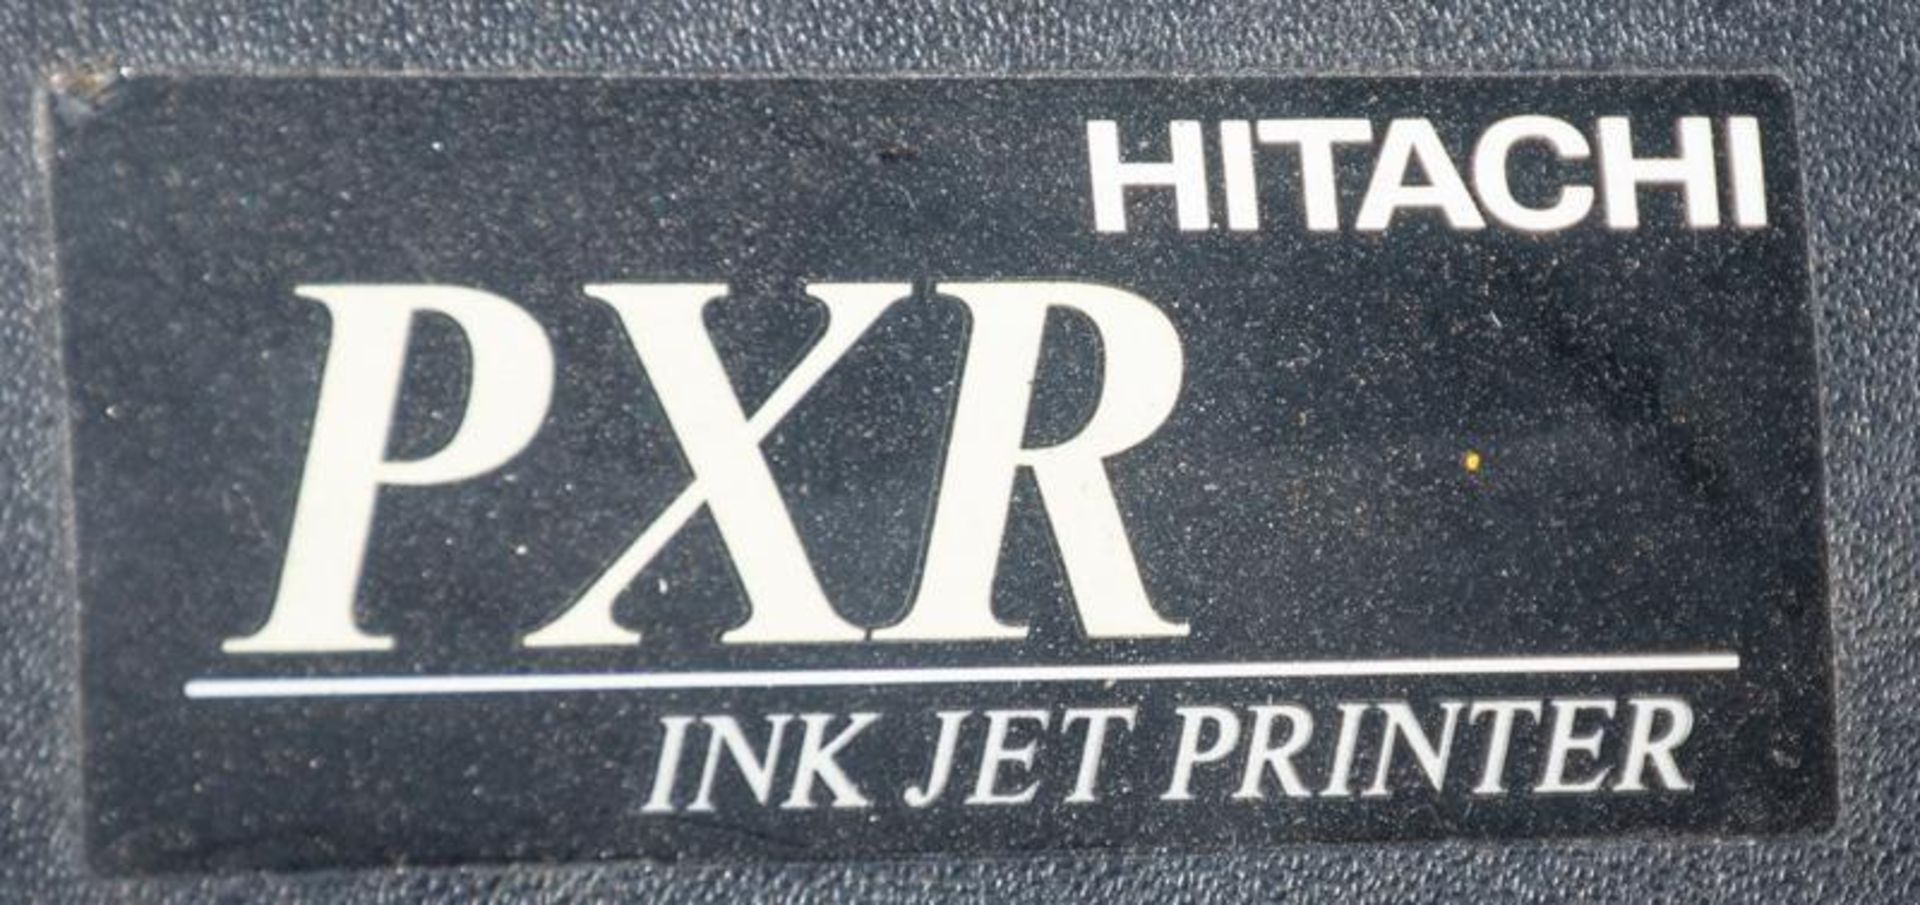 Hitachi PXR-P460W pigmented inkjet printer, print target detection, s/n PXR21733211 - Image 4 of 8